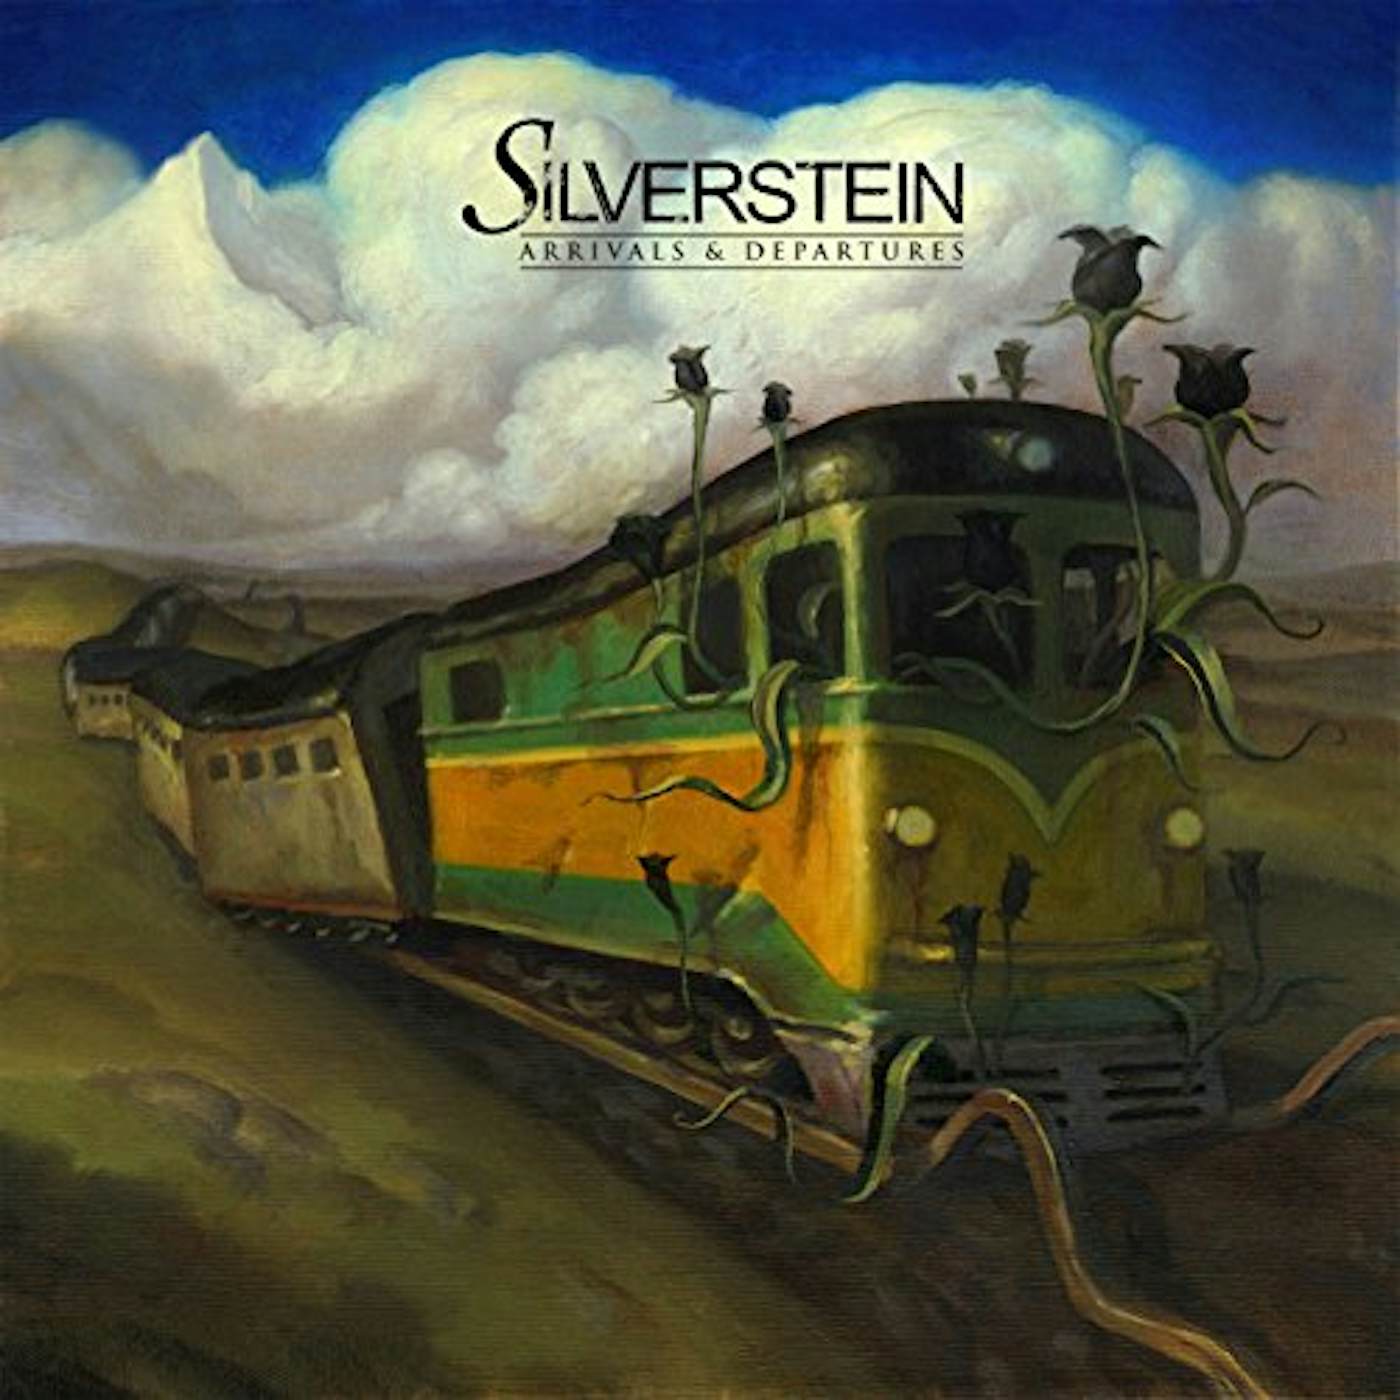 Silverstein ARRIVALS & DEPARTURE CD